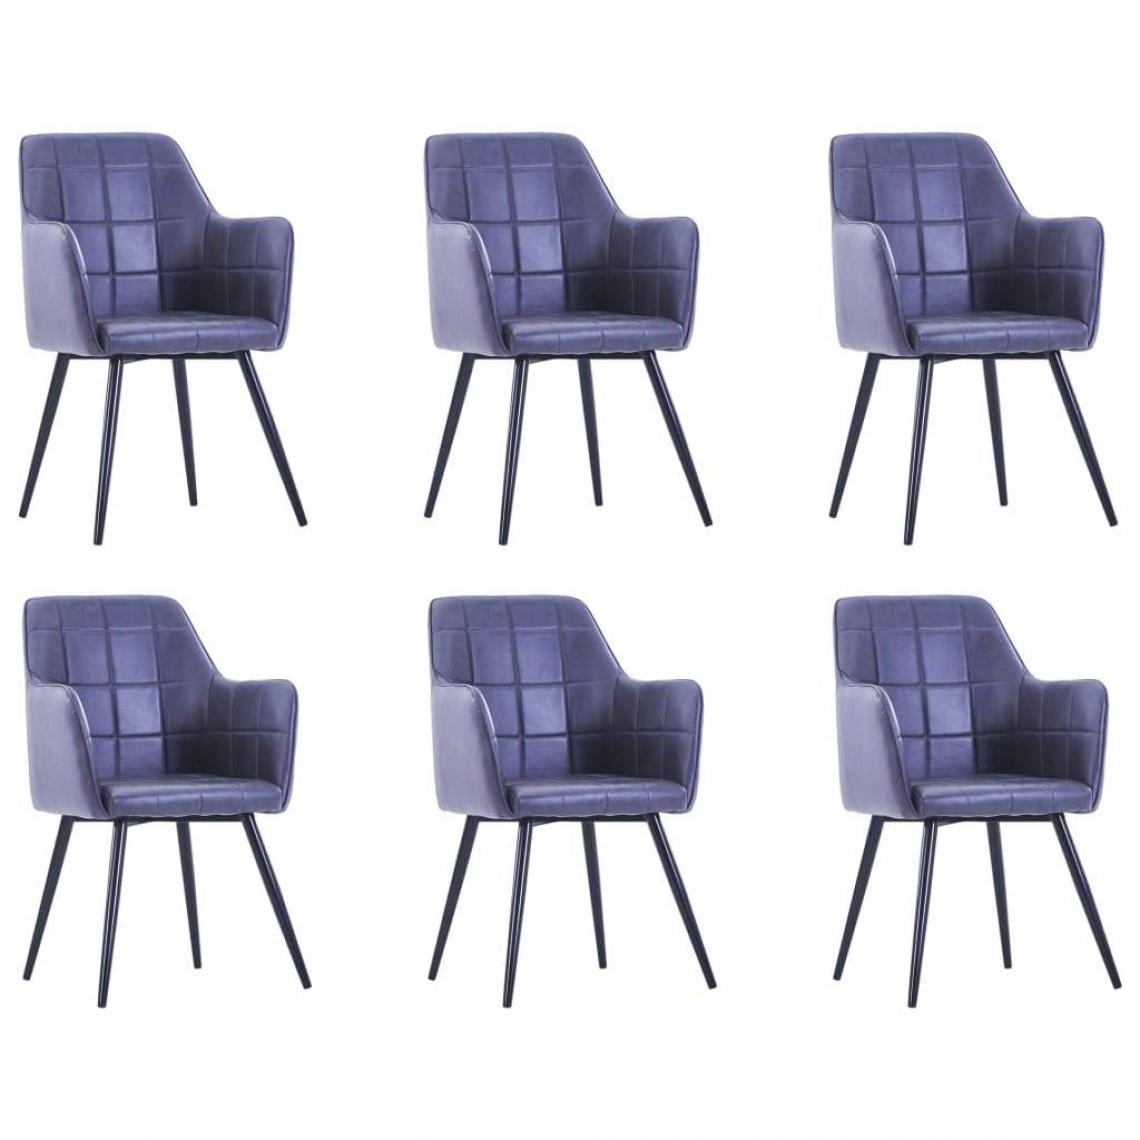 Decoshop26 - Lot de 6 chaises de salle à manger cuisine design moderne similicuir daim gris CDS022500 - Chaises